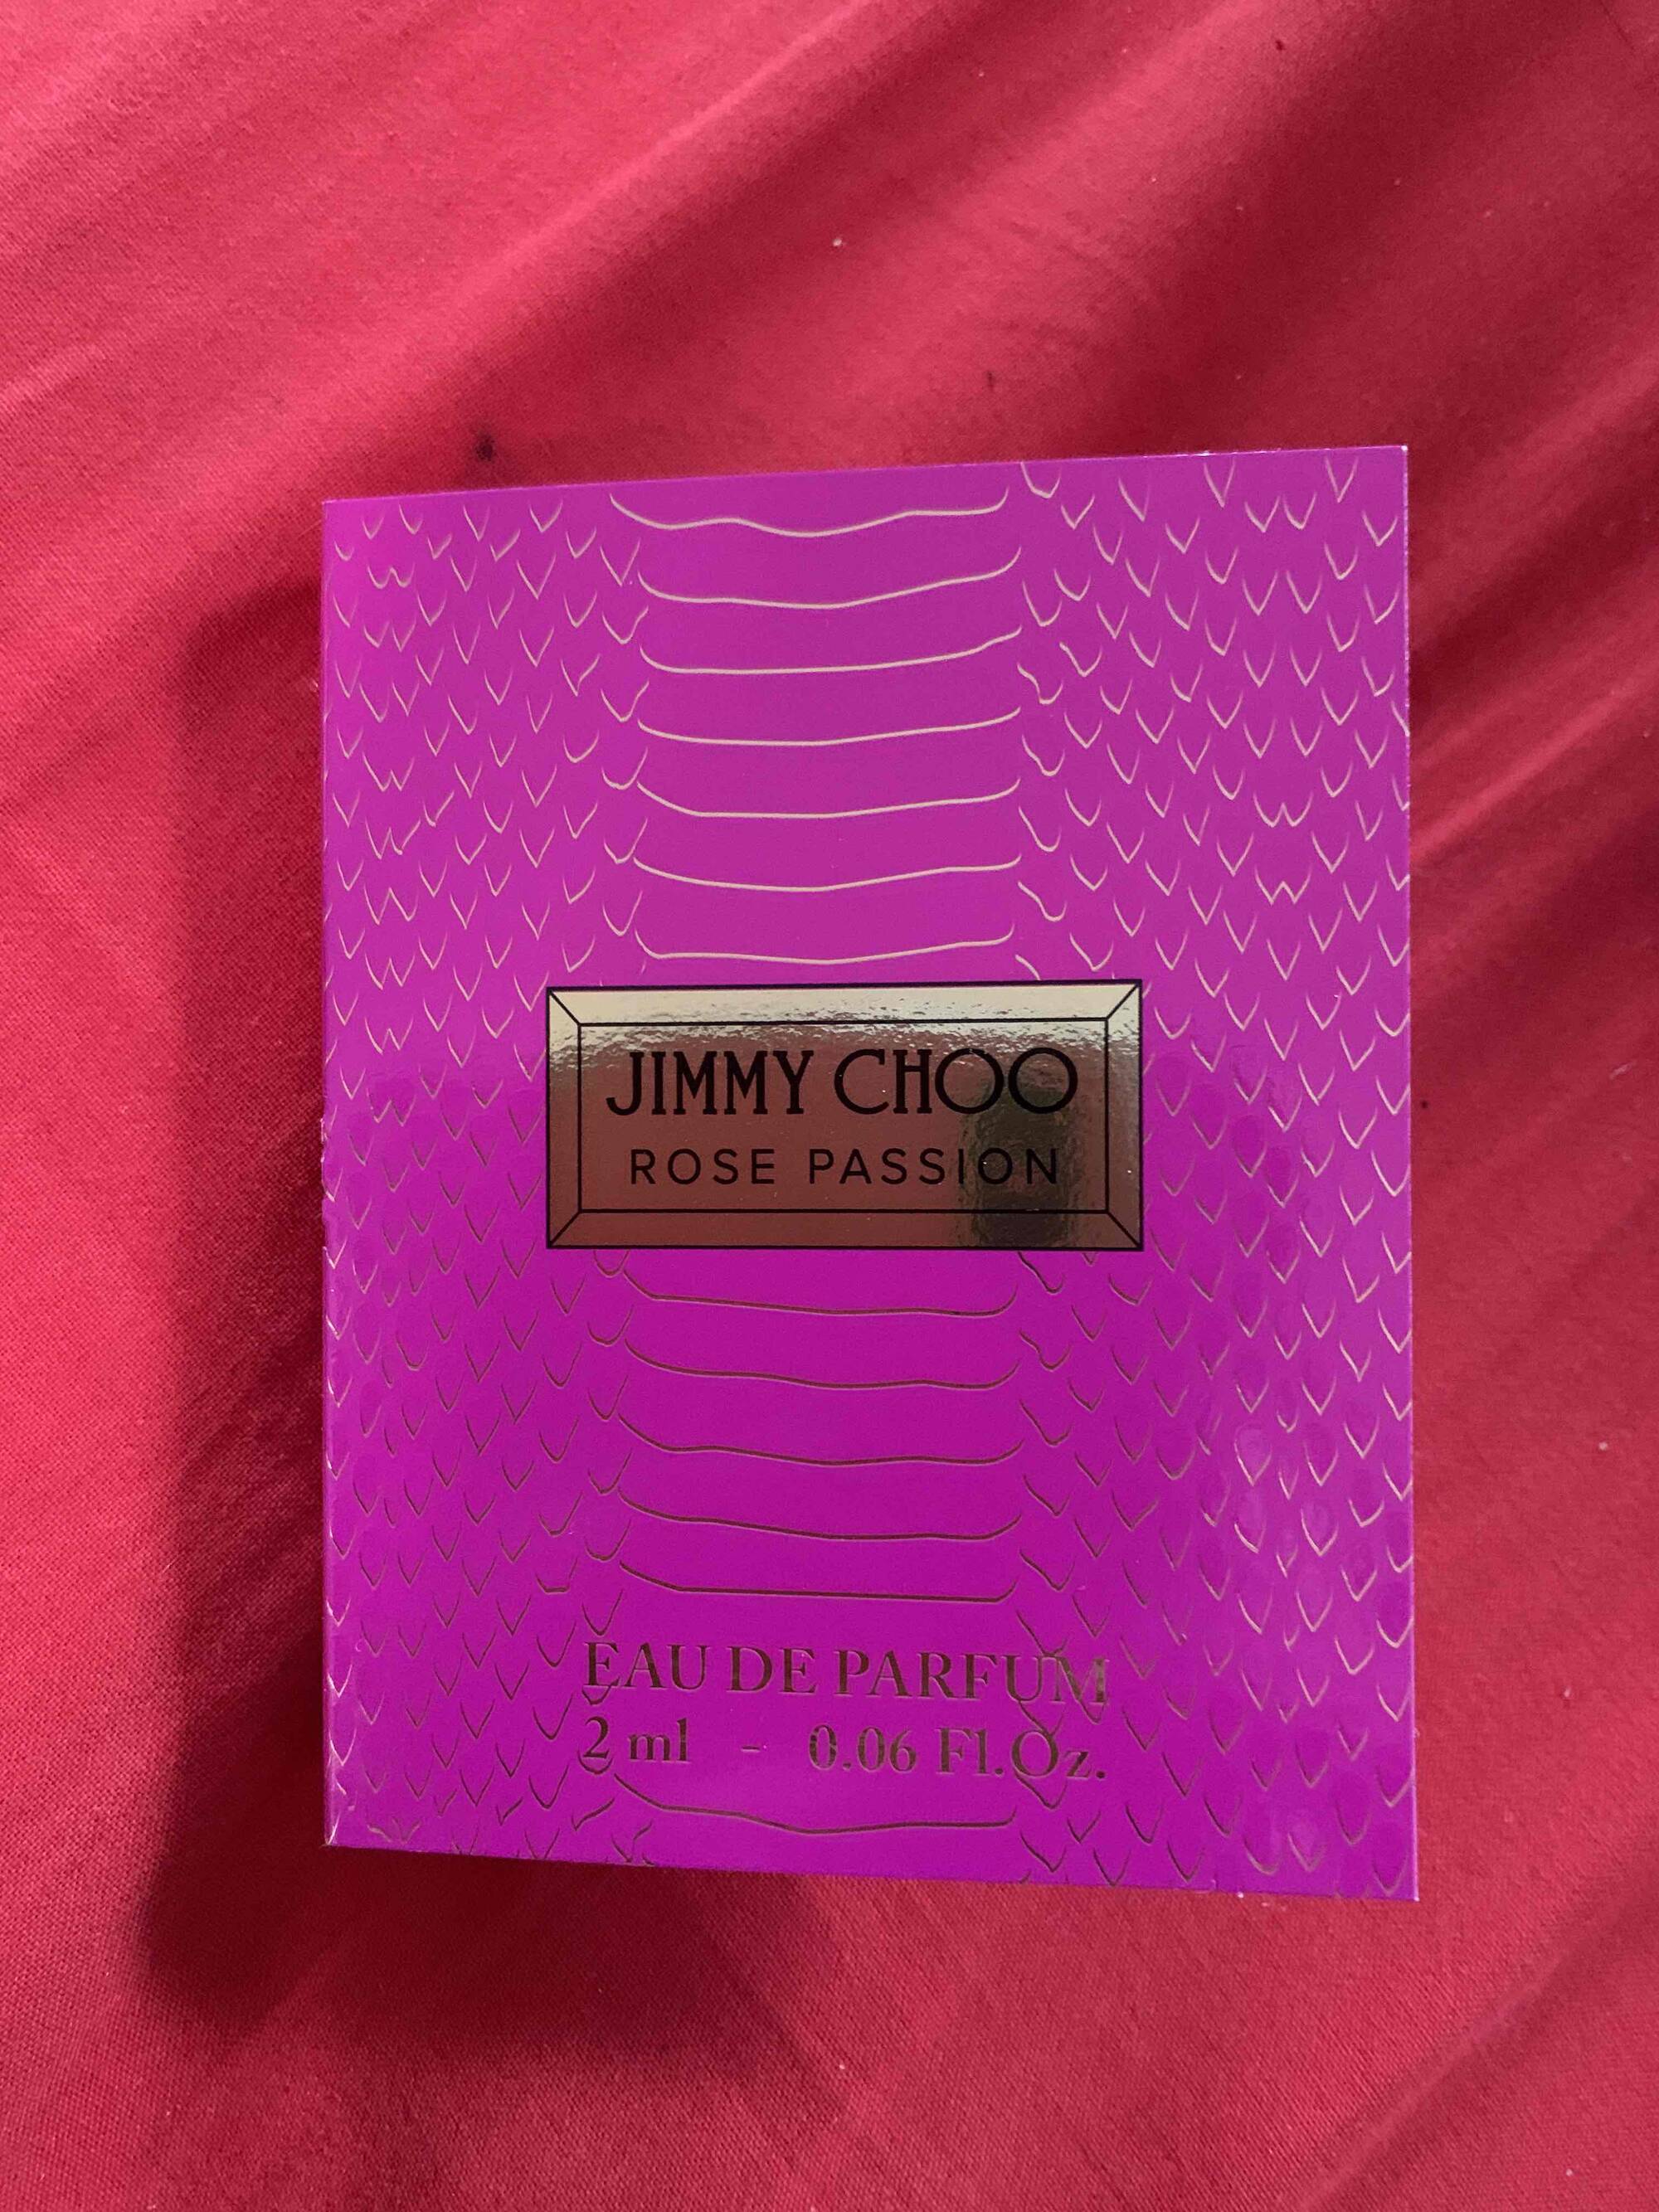 JIMMY CHOO - Rose passion - Eau de Parfum